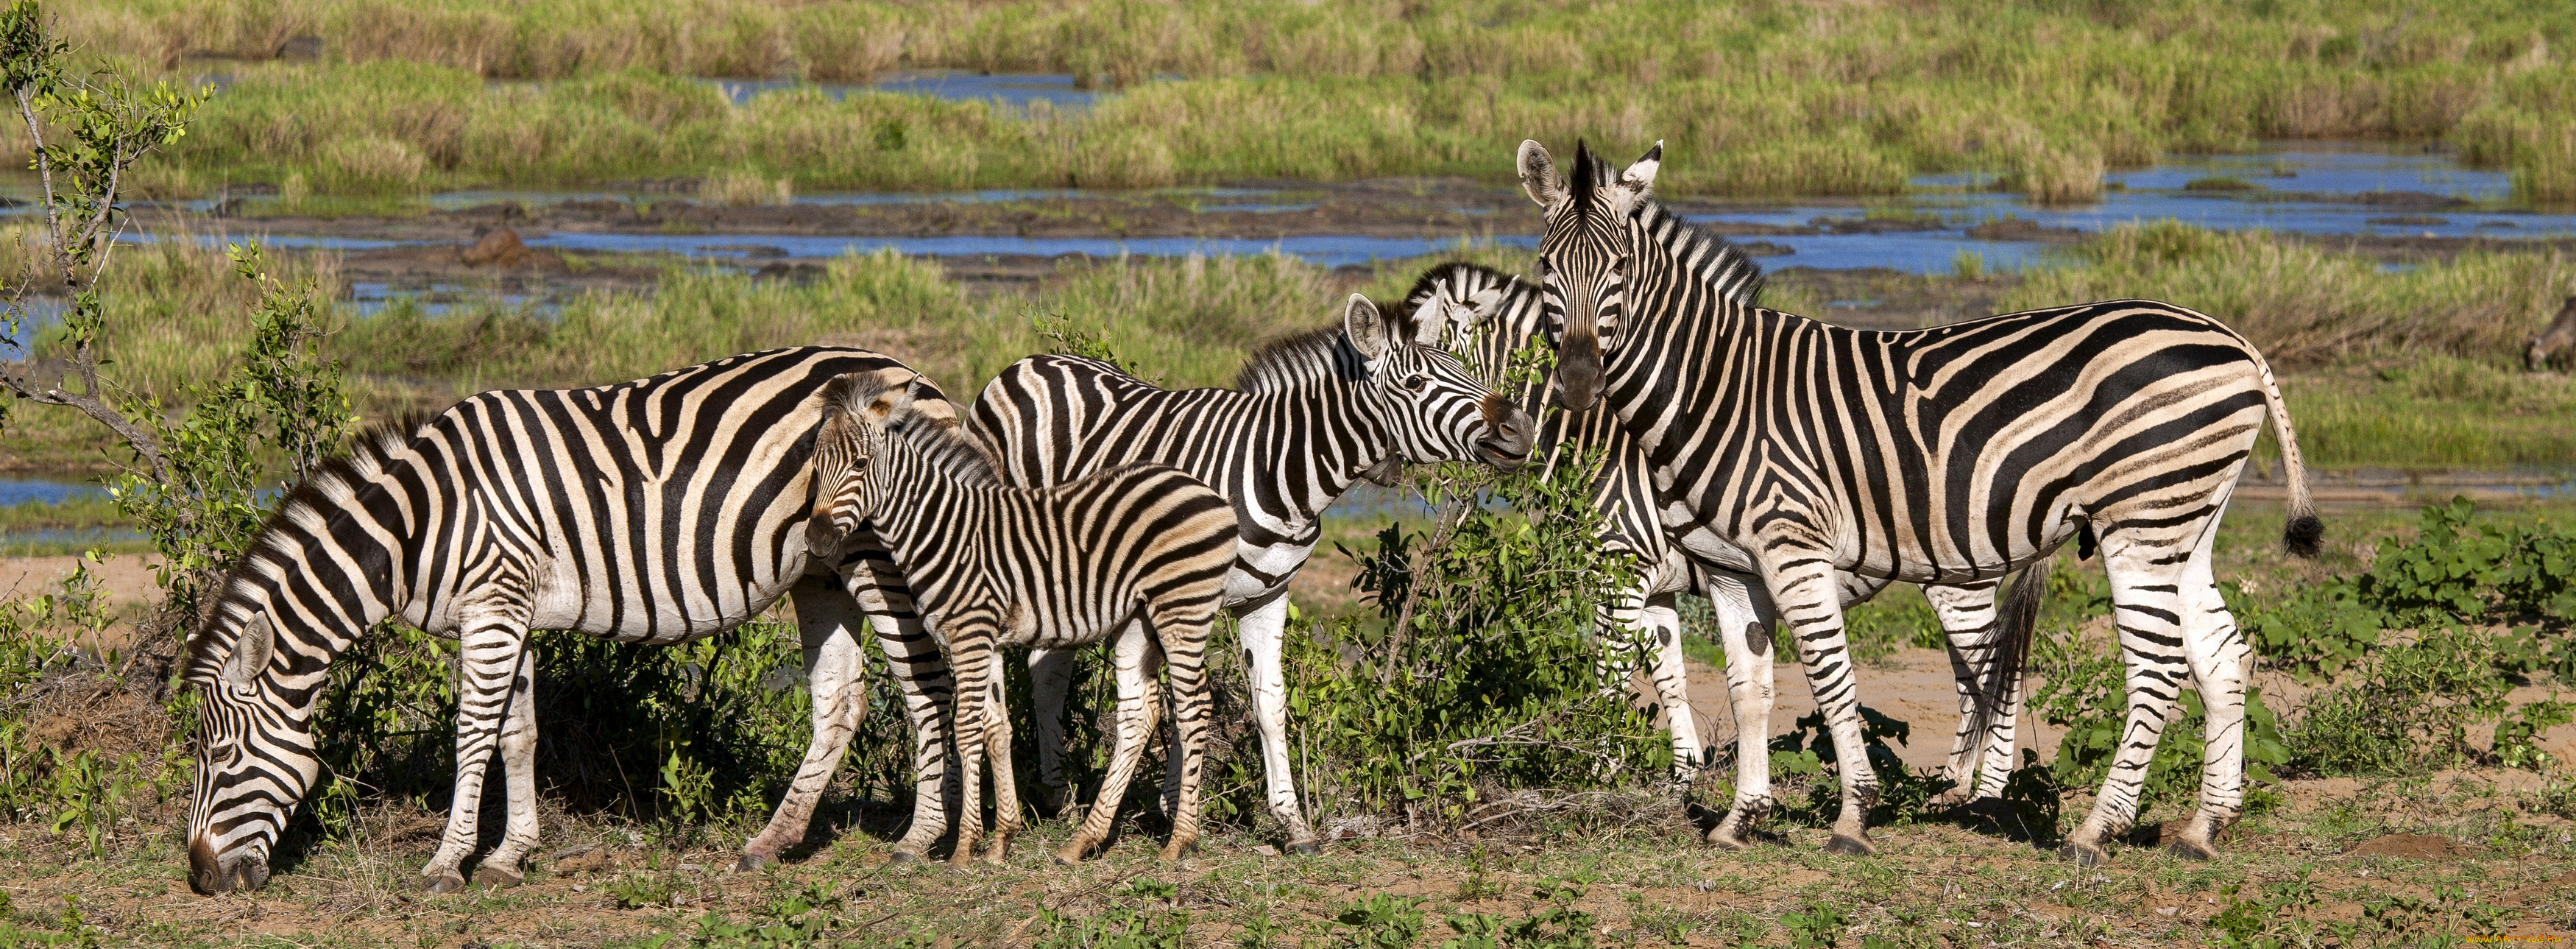 животные, зебры, африка, zebras, africa